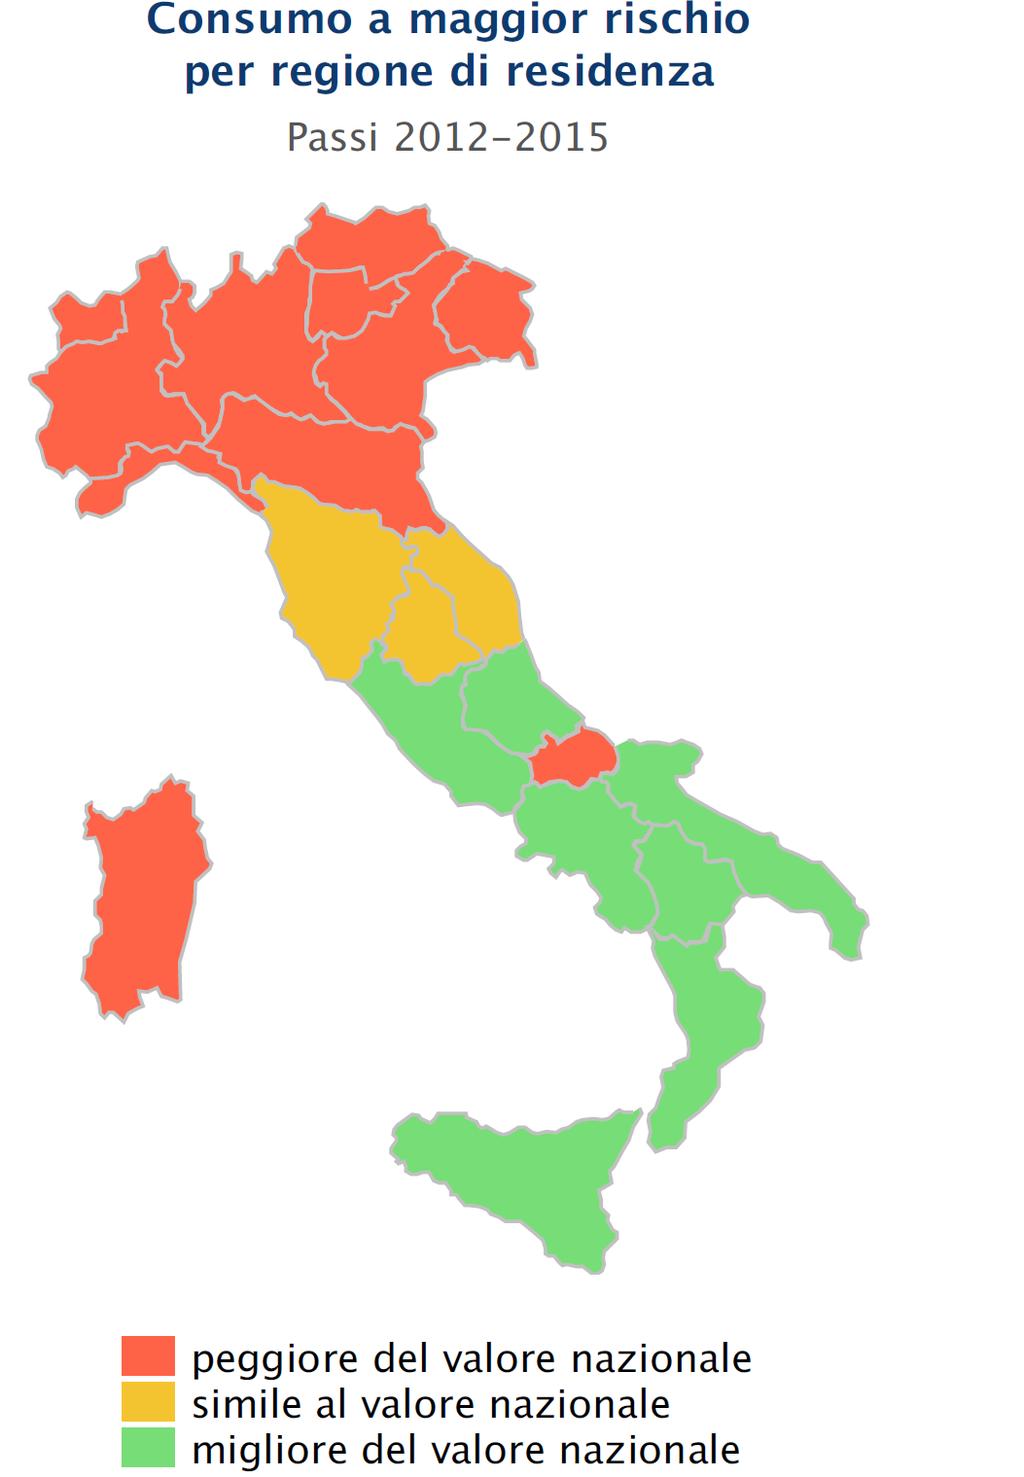 Nella Regione Piemonte, nel periodo 11-14, la percentuale di bevitori a maggior rischio è risultata del 18, mentre, nello stesso periodo, nel Pool di ASL partecipanti alla Sorveglianza Passi in